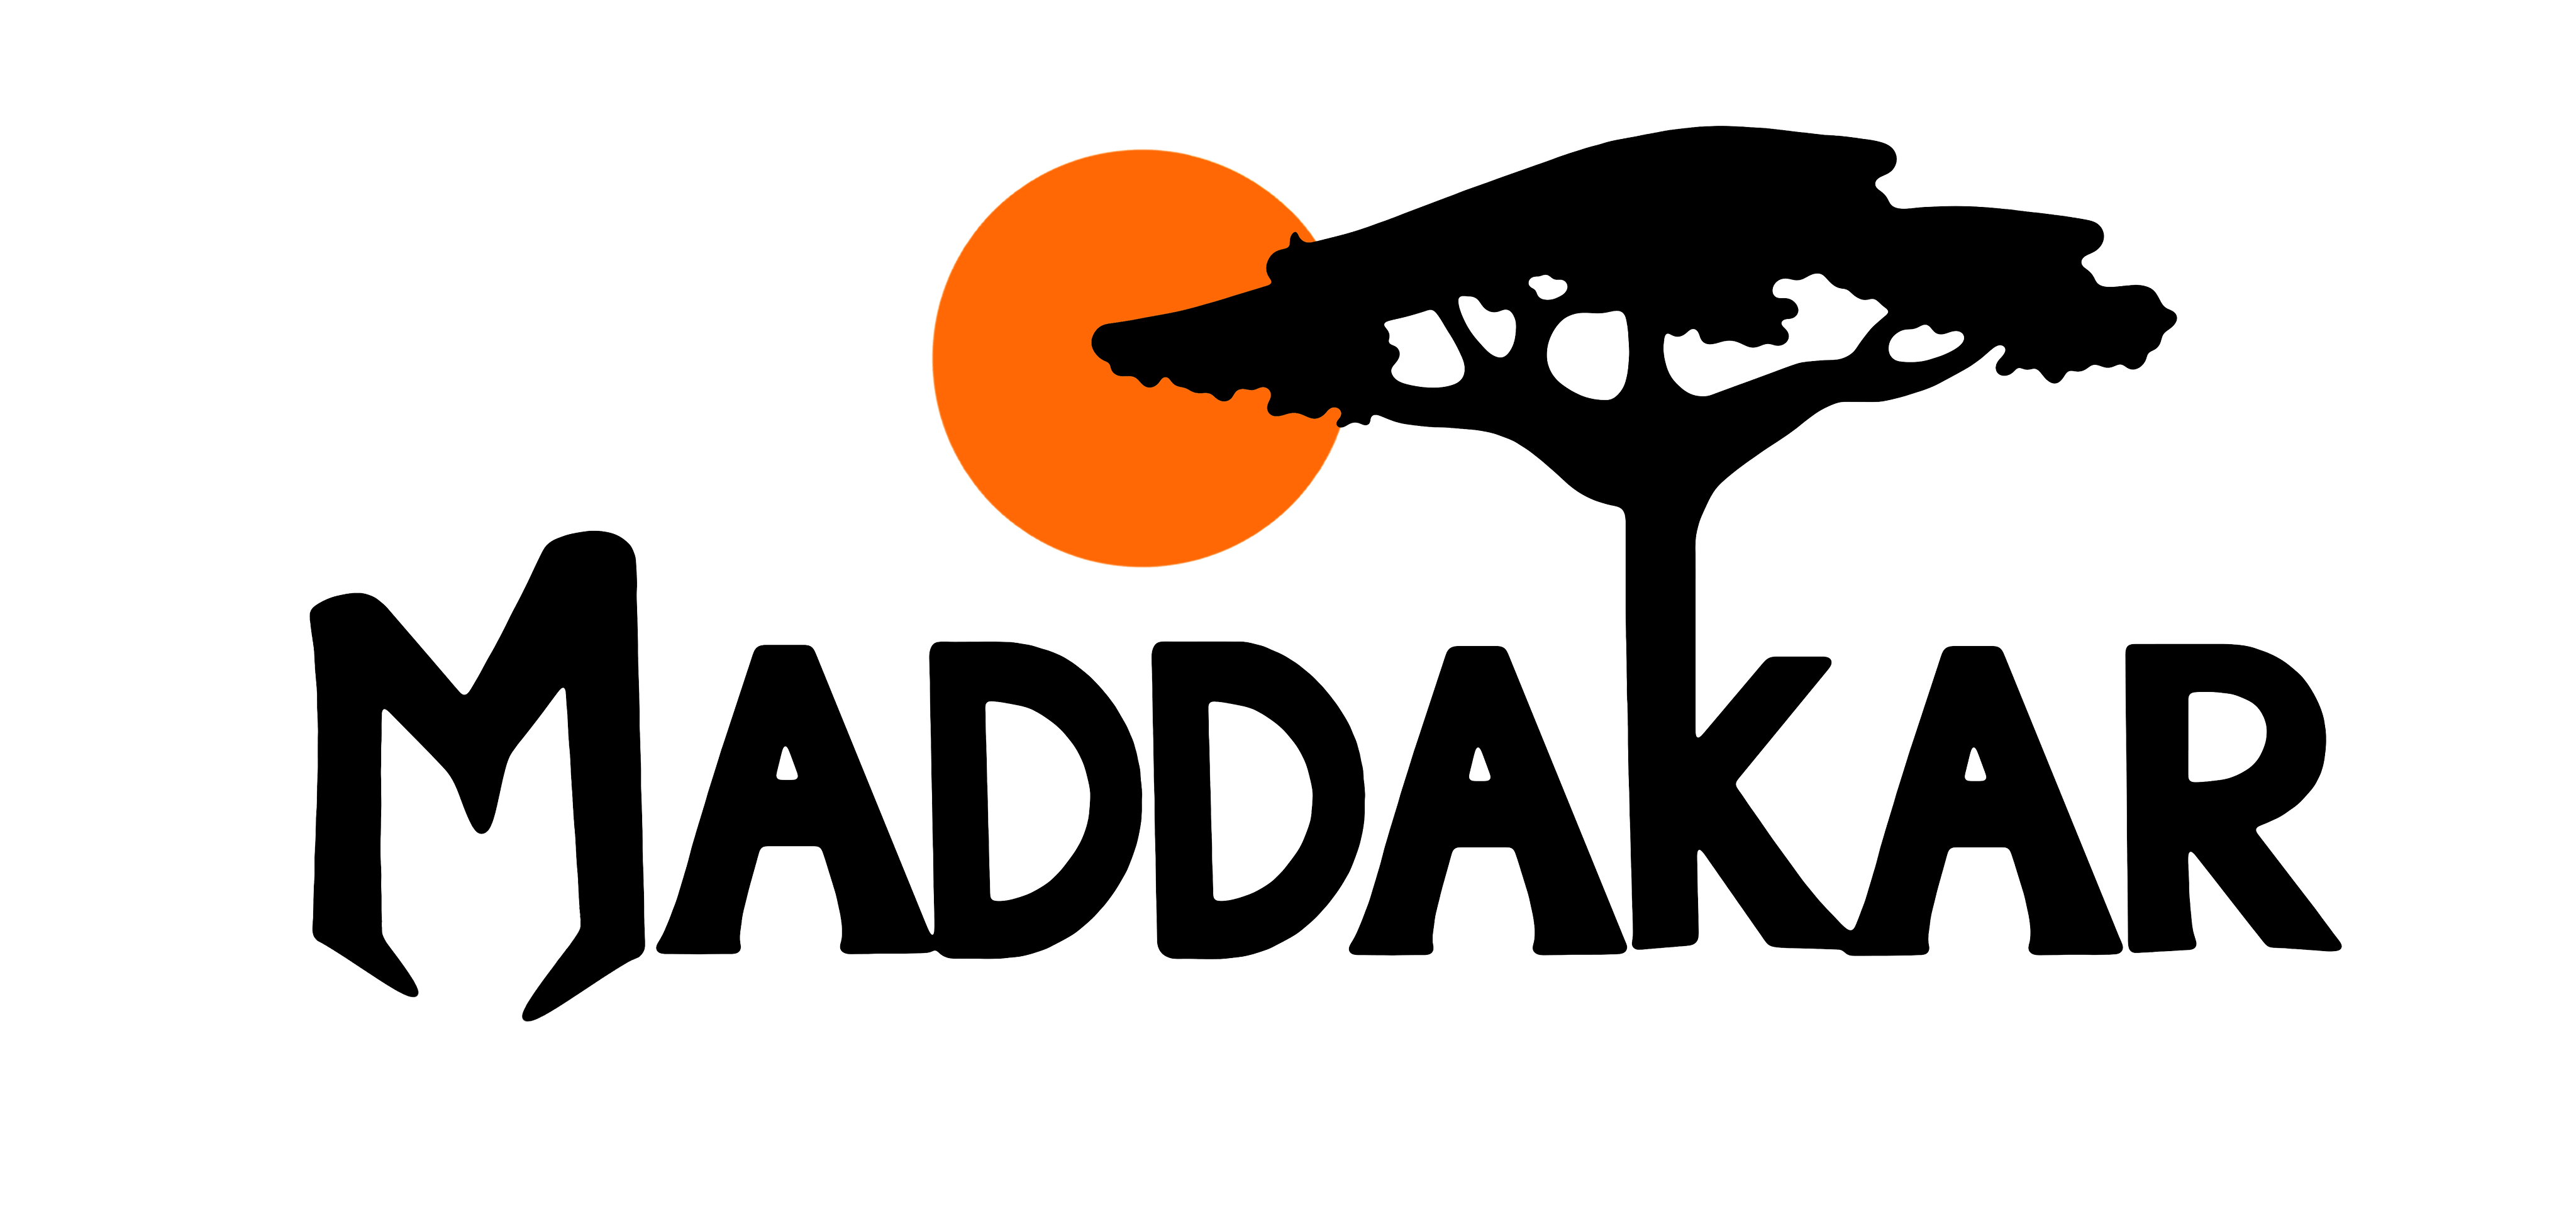 Maddakar association